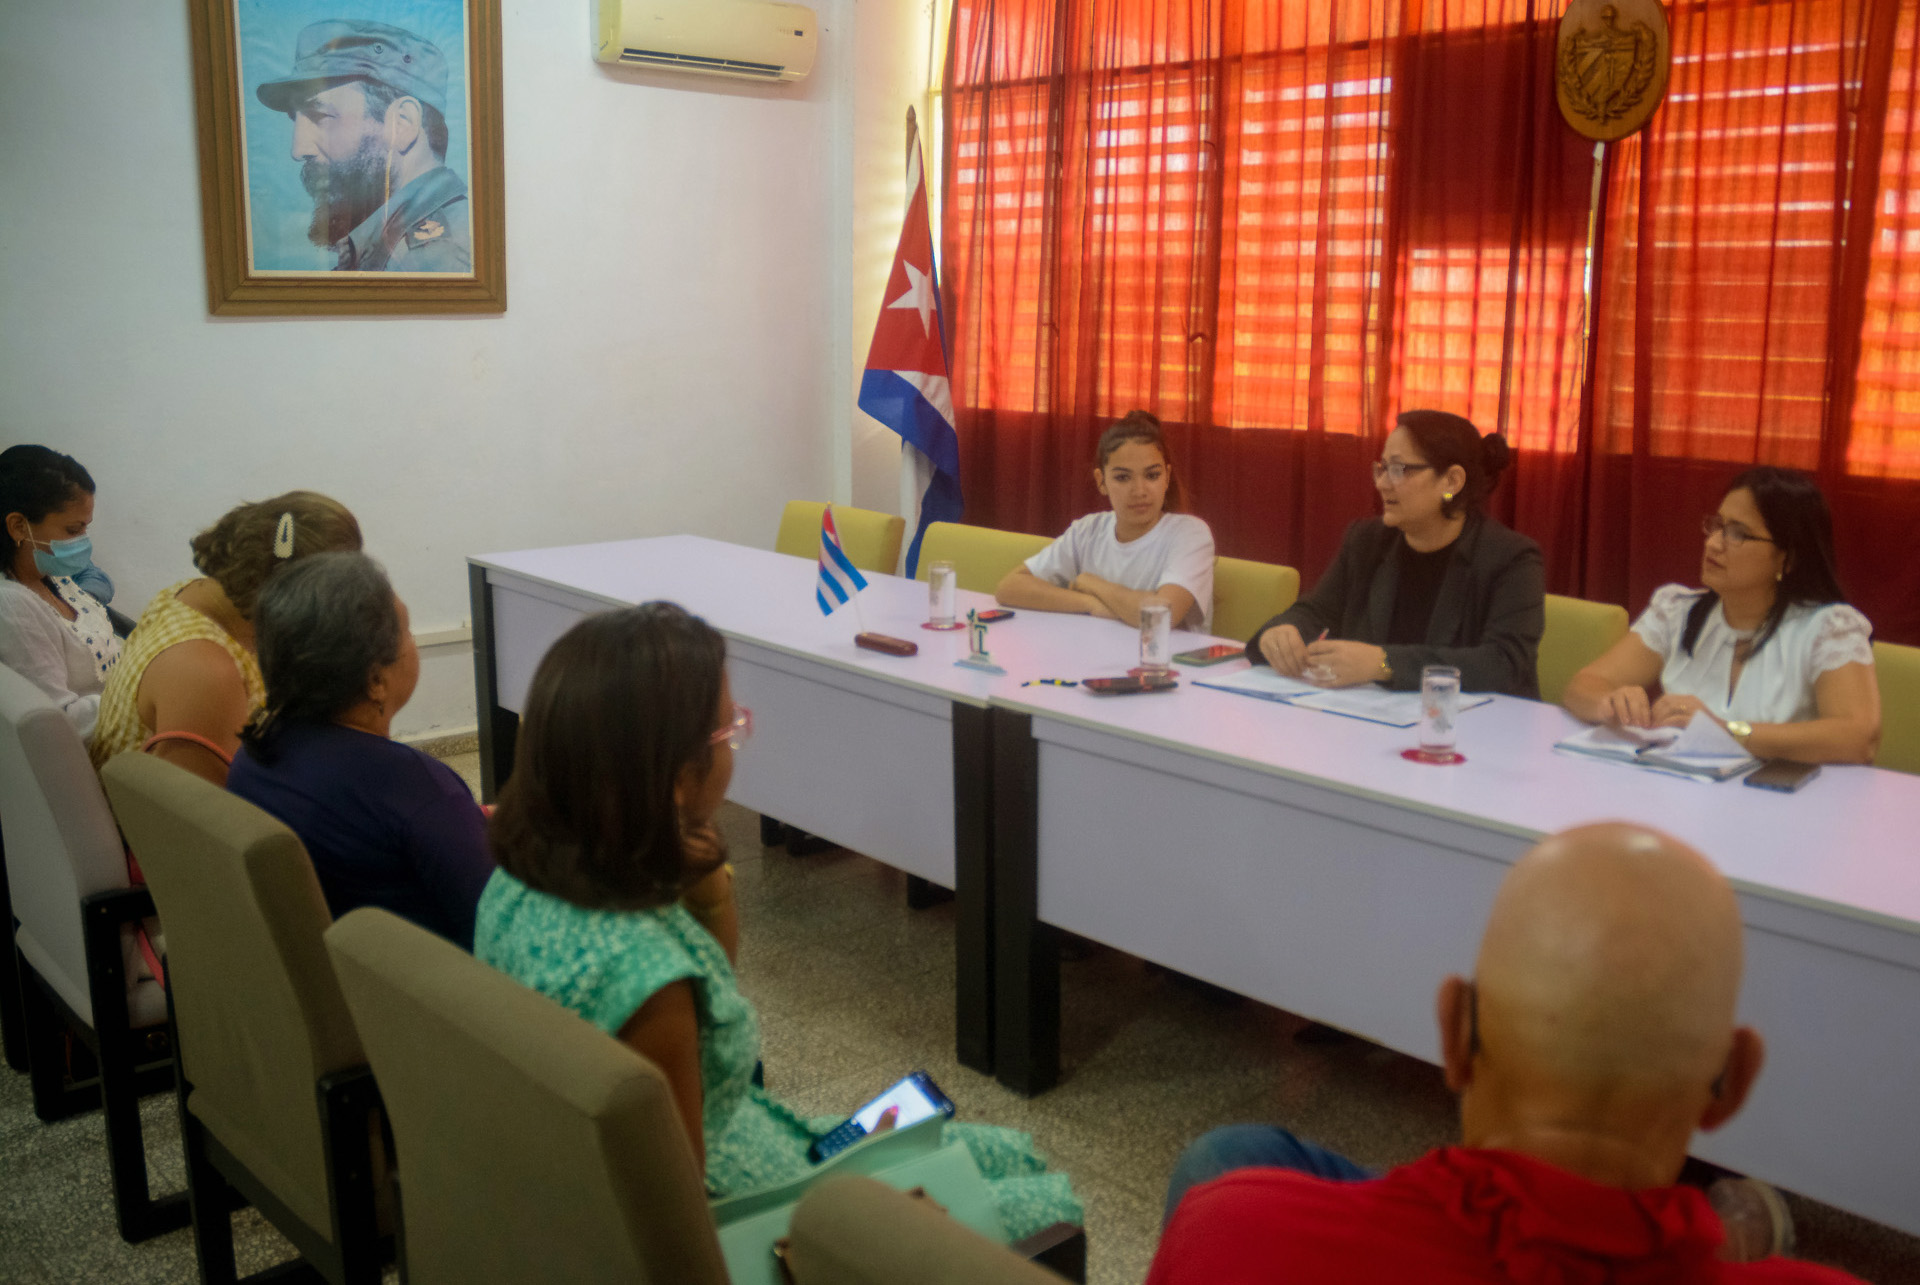 conferencia de prensa universidad de las tunas foto yaciel peña de la peña agencia cubana de noticias 2